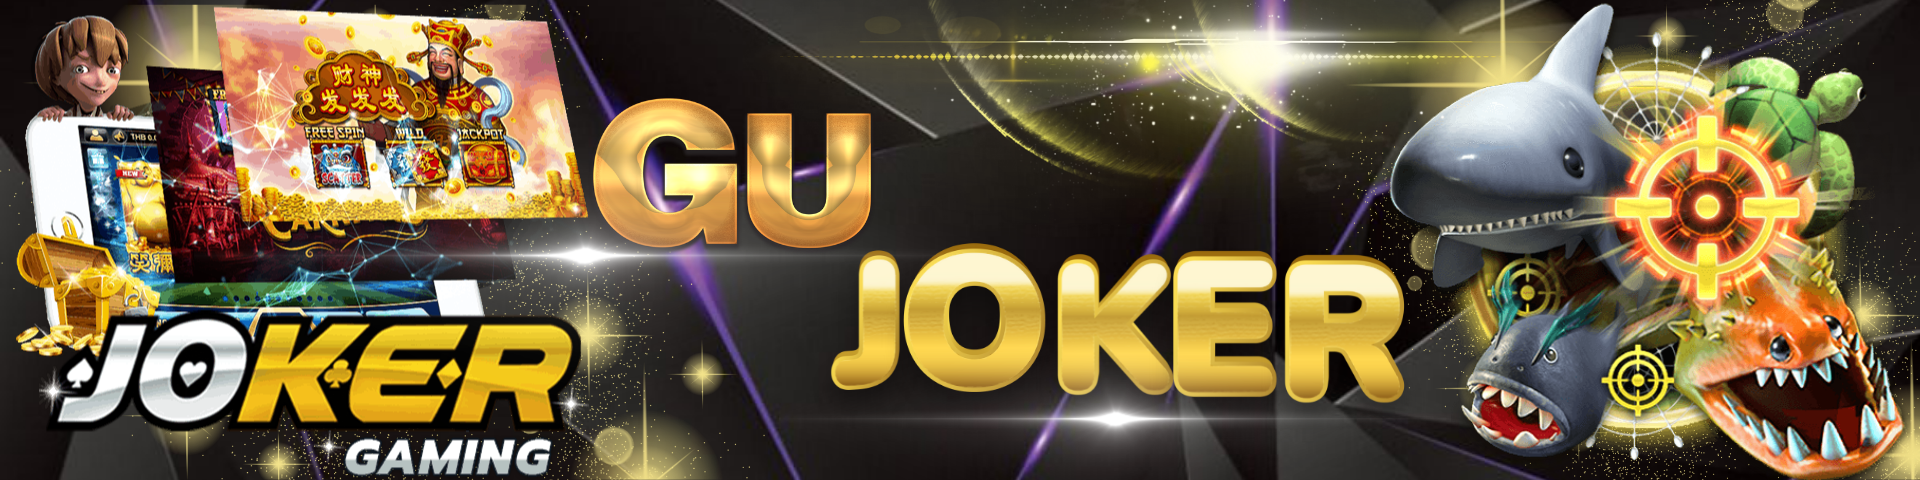 Gujoker Joker Slot เกมสล็อตออนไลน์ 24 ชั่วโมง มีระบบฝาก ถอนแบบออโต้